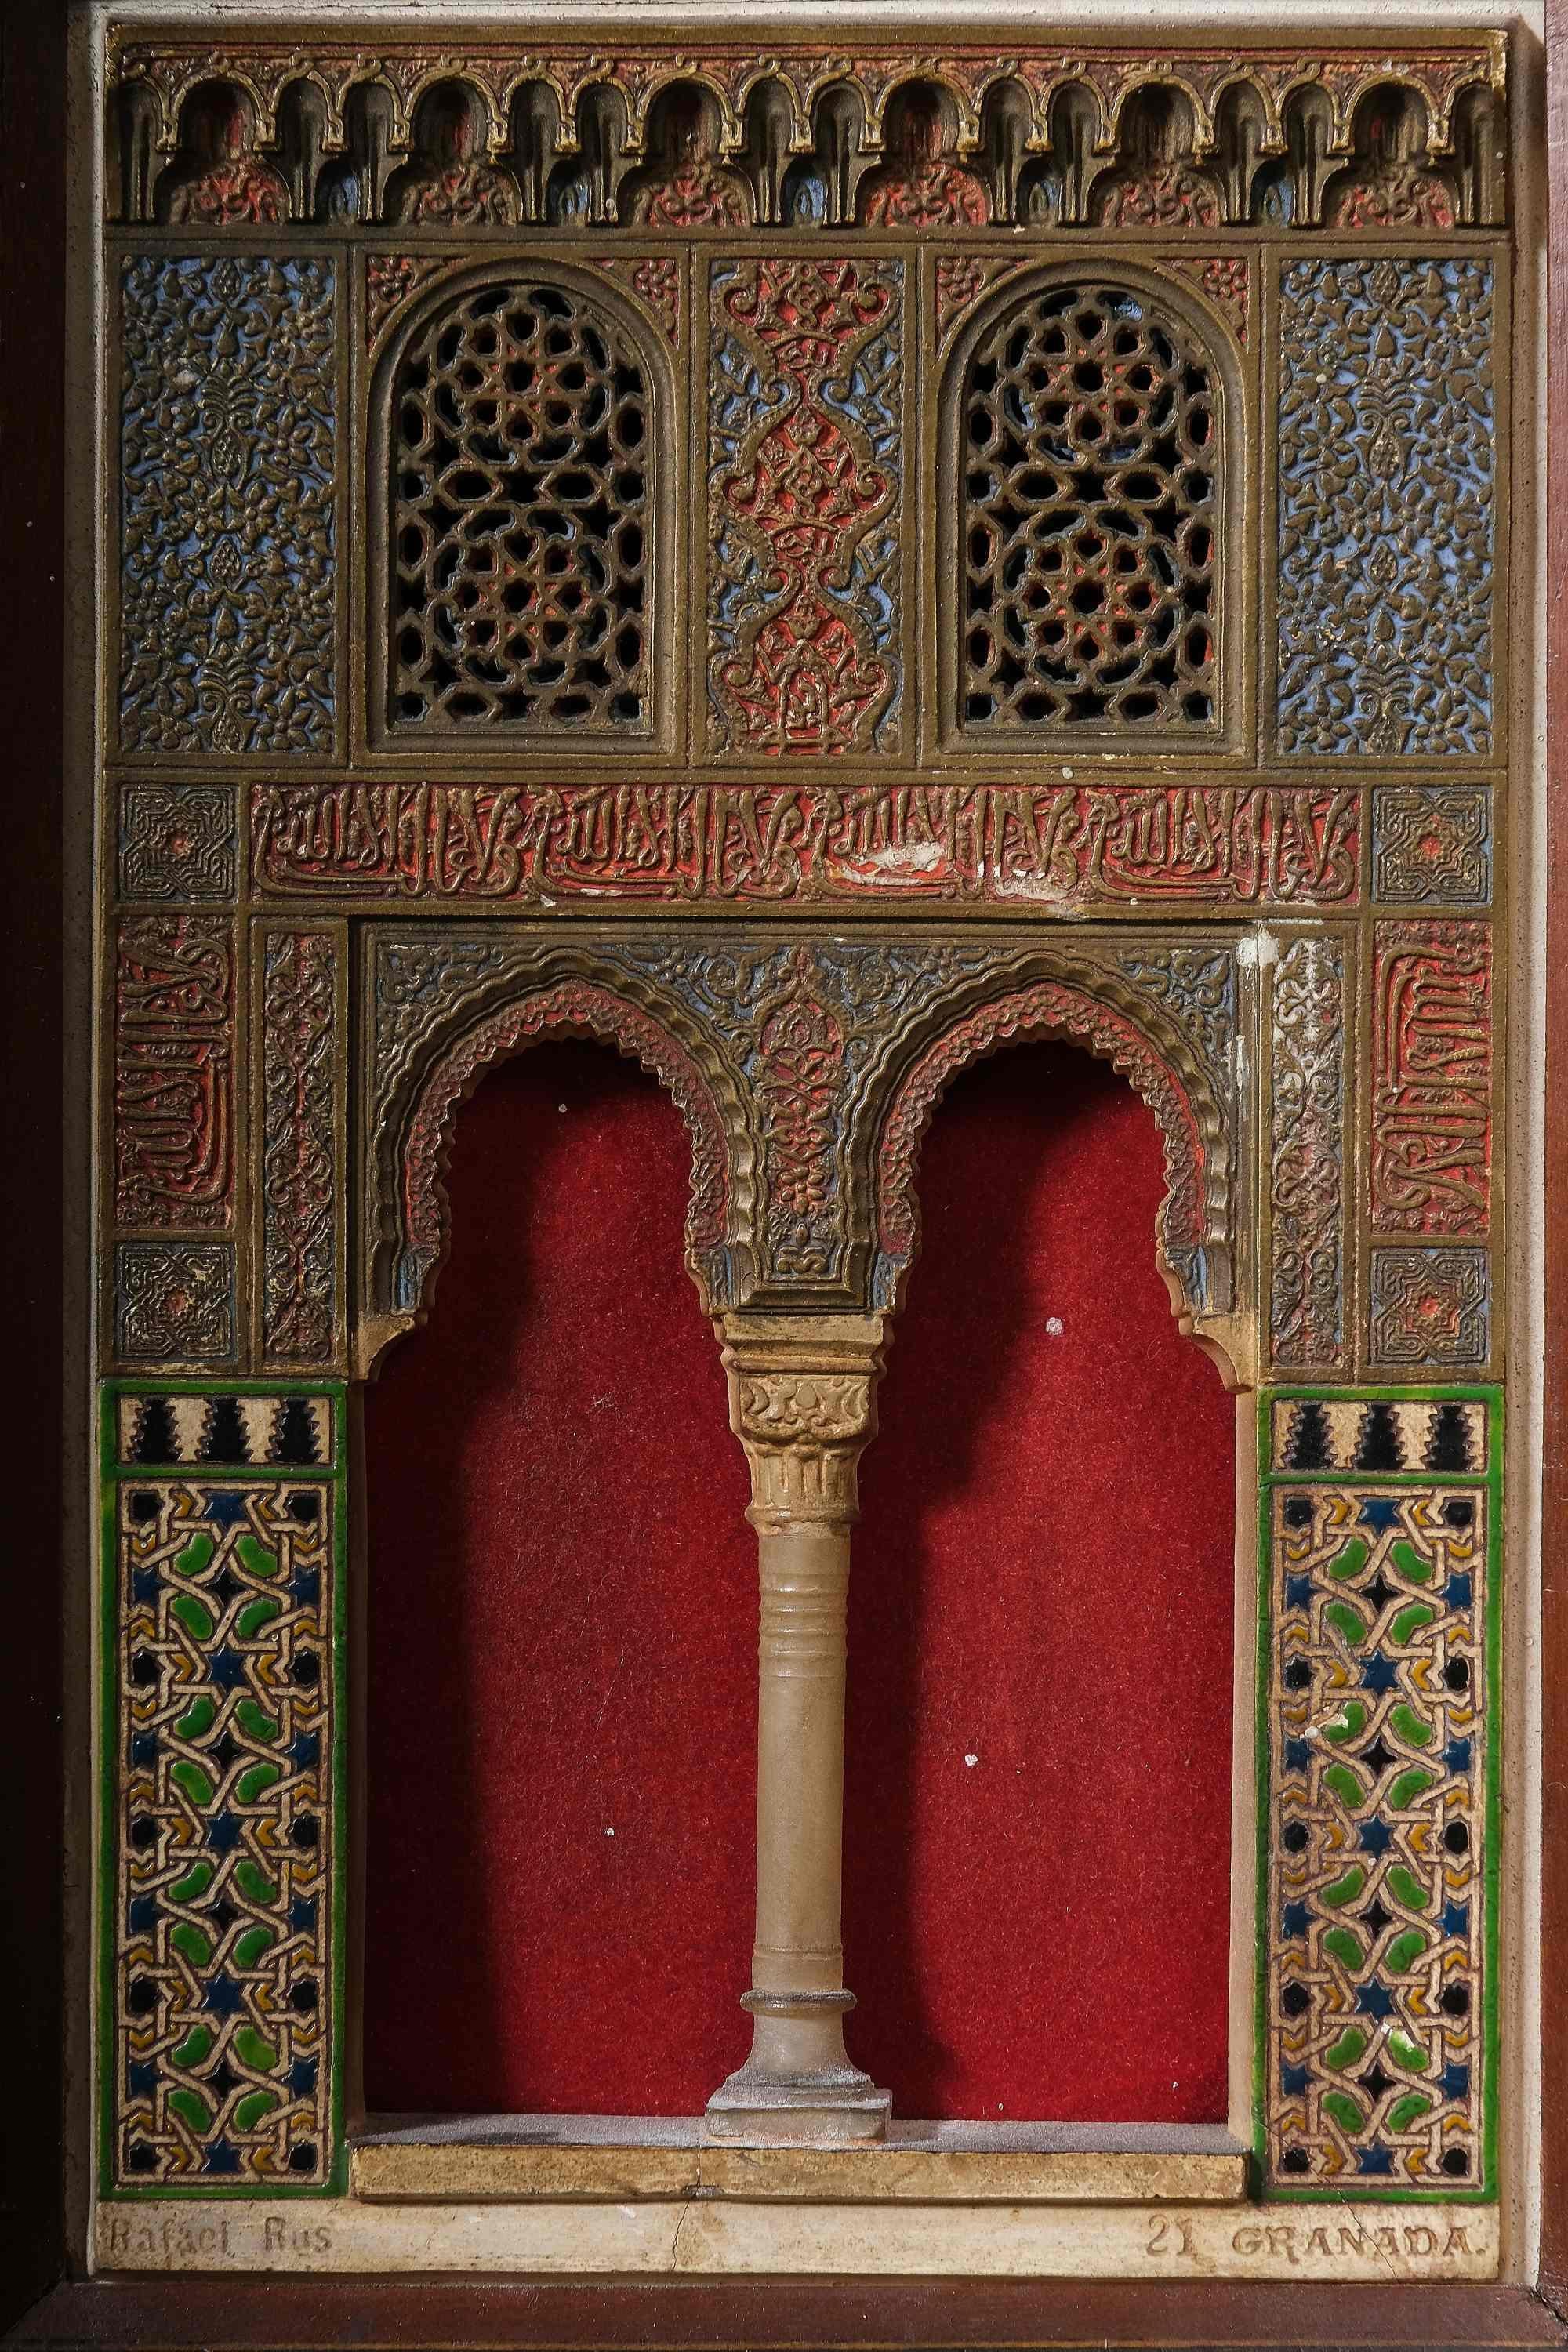 Polychromé Paire de « Alhambra-Fakatmodels », plaques en stuc polychromé, par Rafael Rus